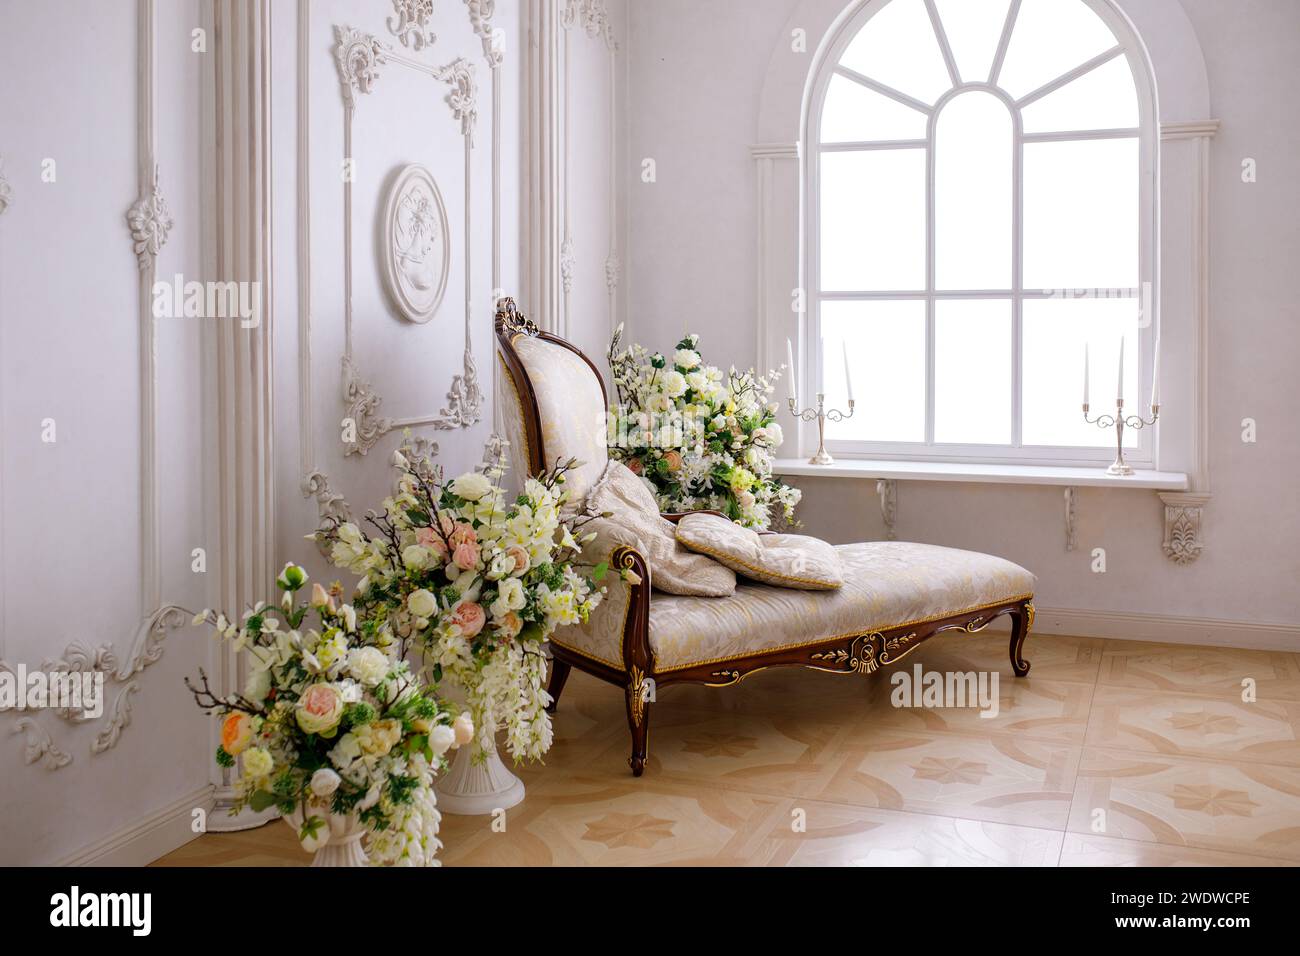 canapé lumineux dans un intérieur classique. Photo de haute qualité Banque D'Images